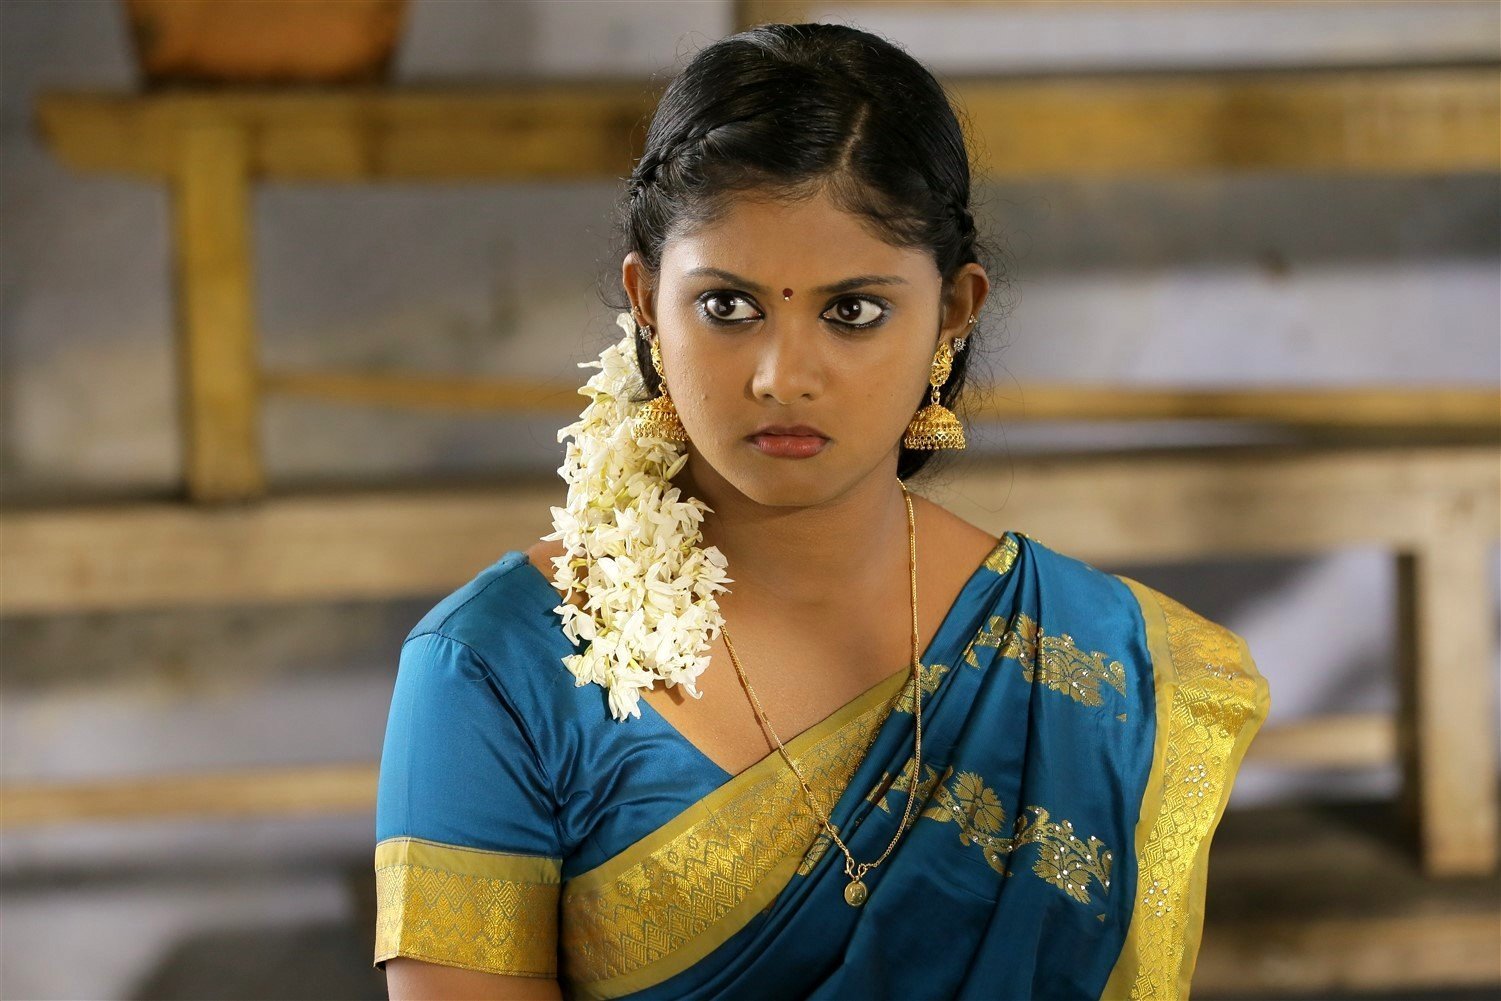 Shivani (Lolly Lolly Aararo) - Lolly Lolly Aararo Movie Hot Stills | Picture 1491473